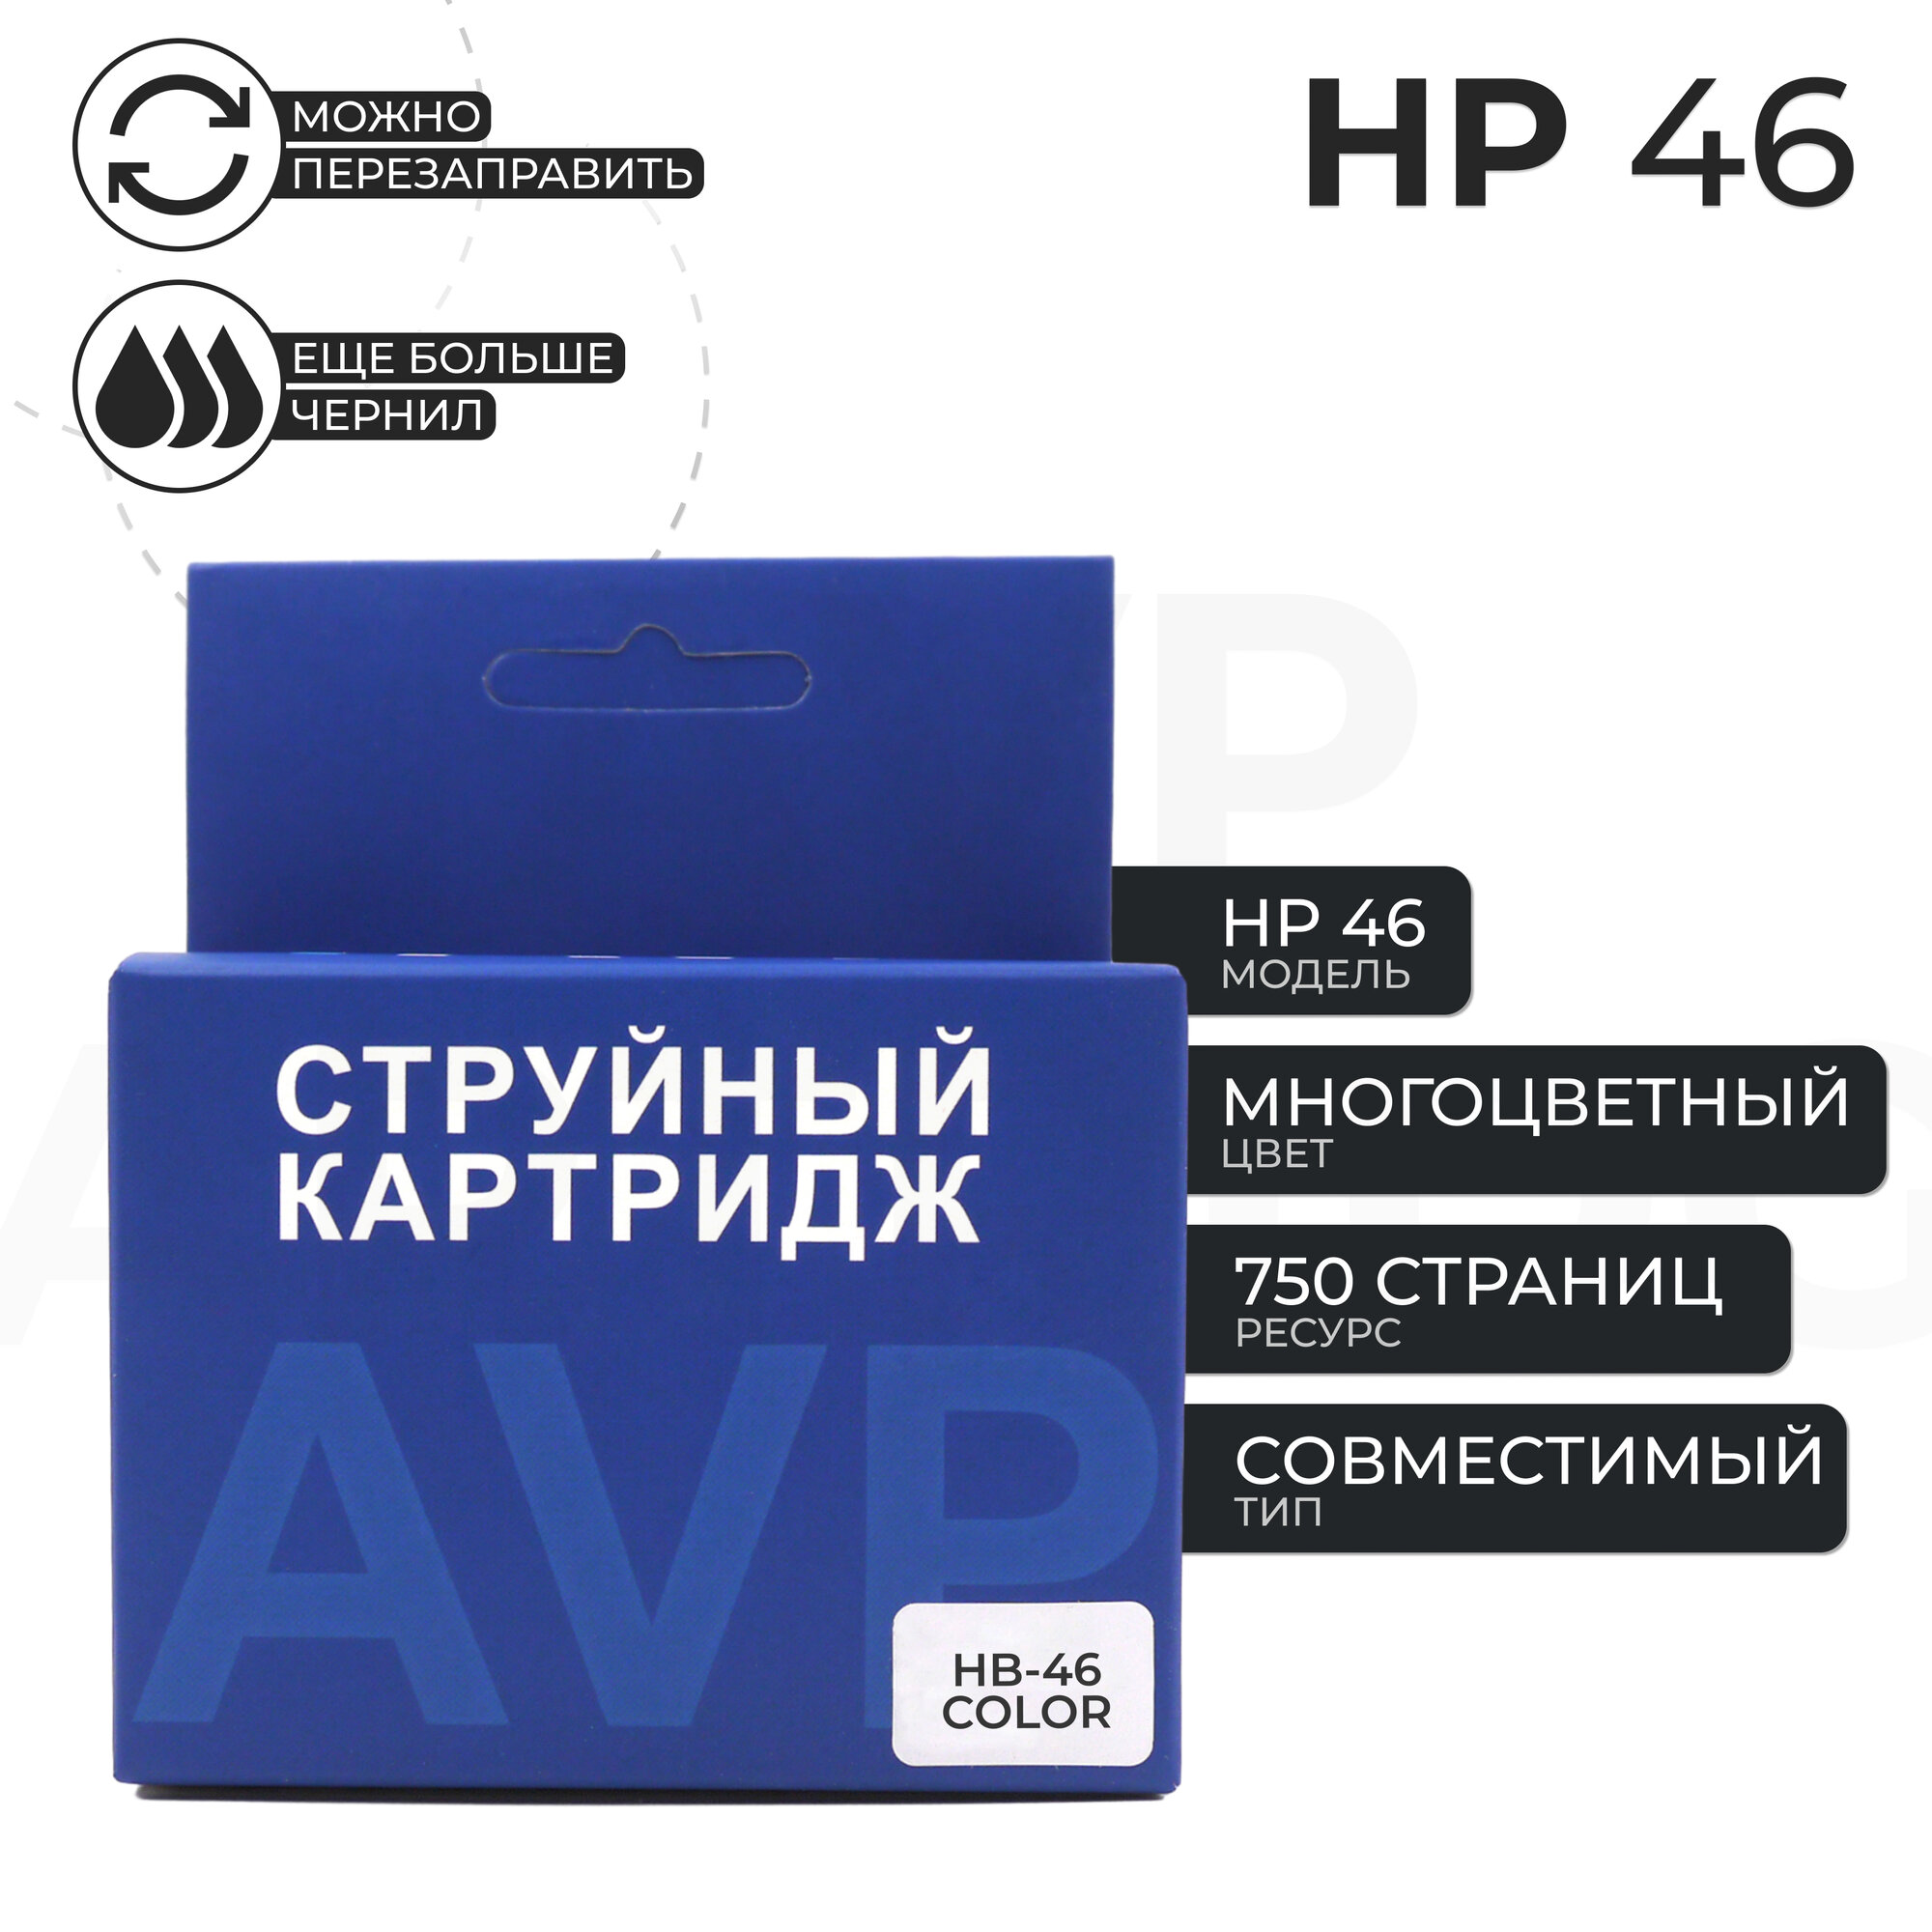 Картридж HP 46, цветной